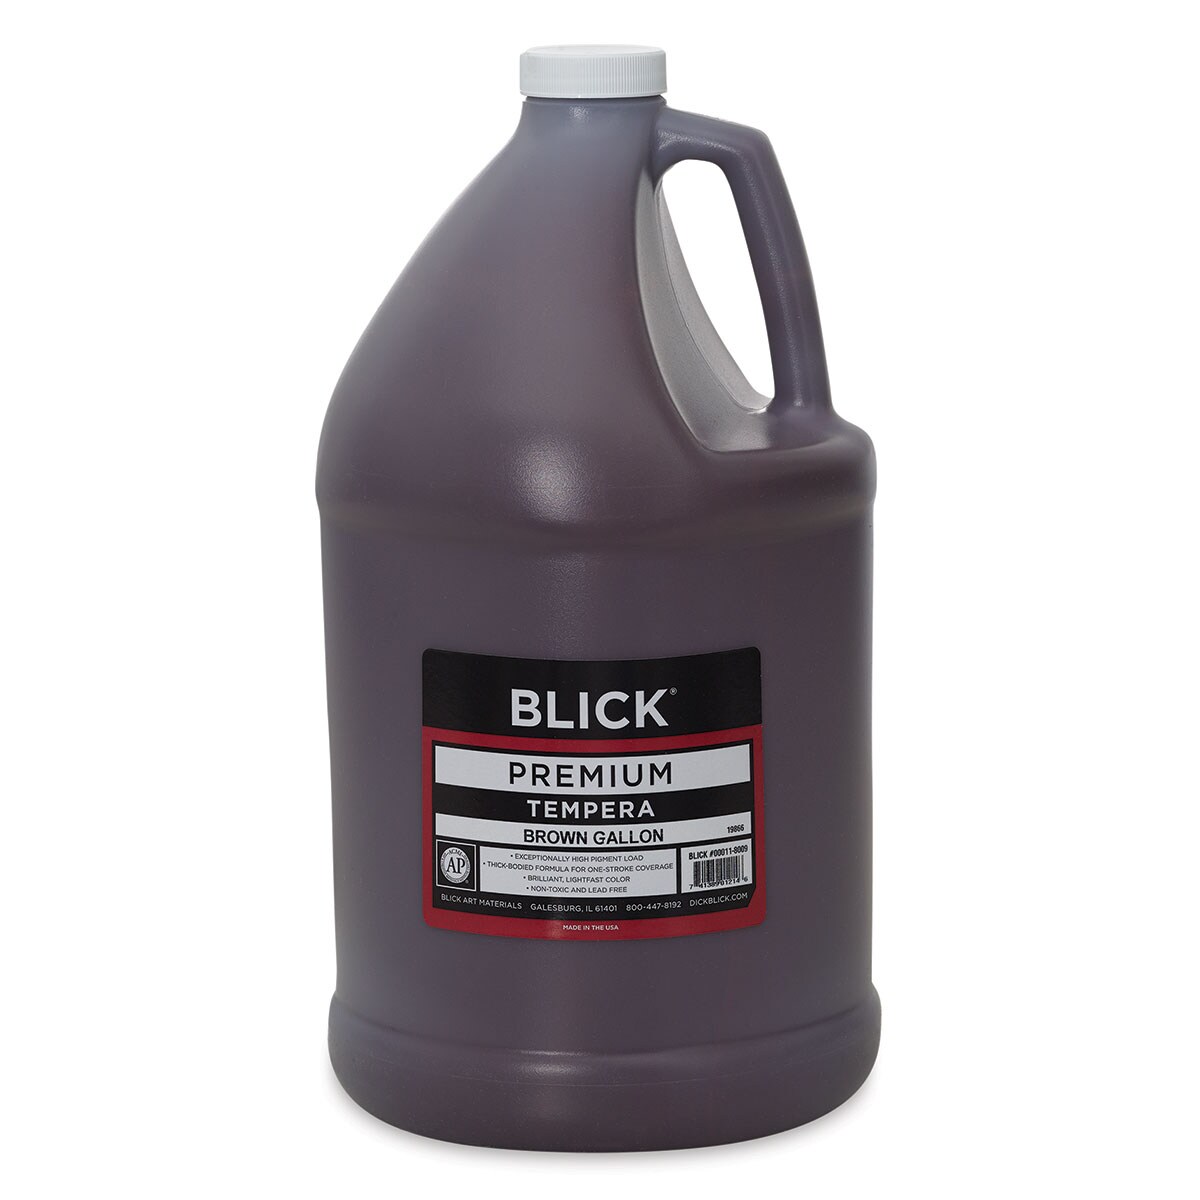 Blick Premium Grade Tempera - Brown, Gallon